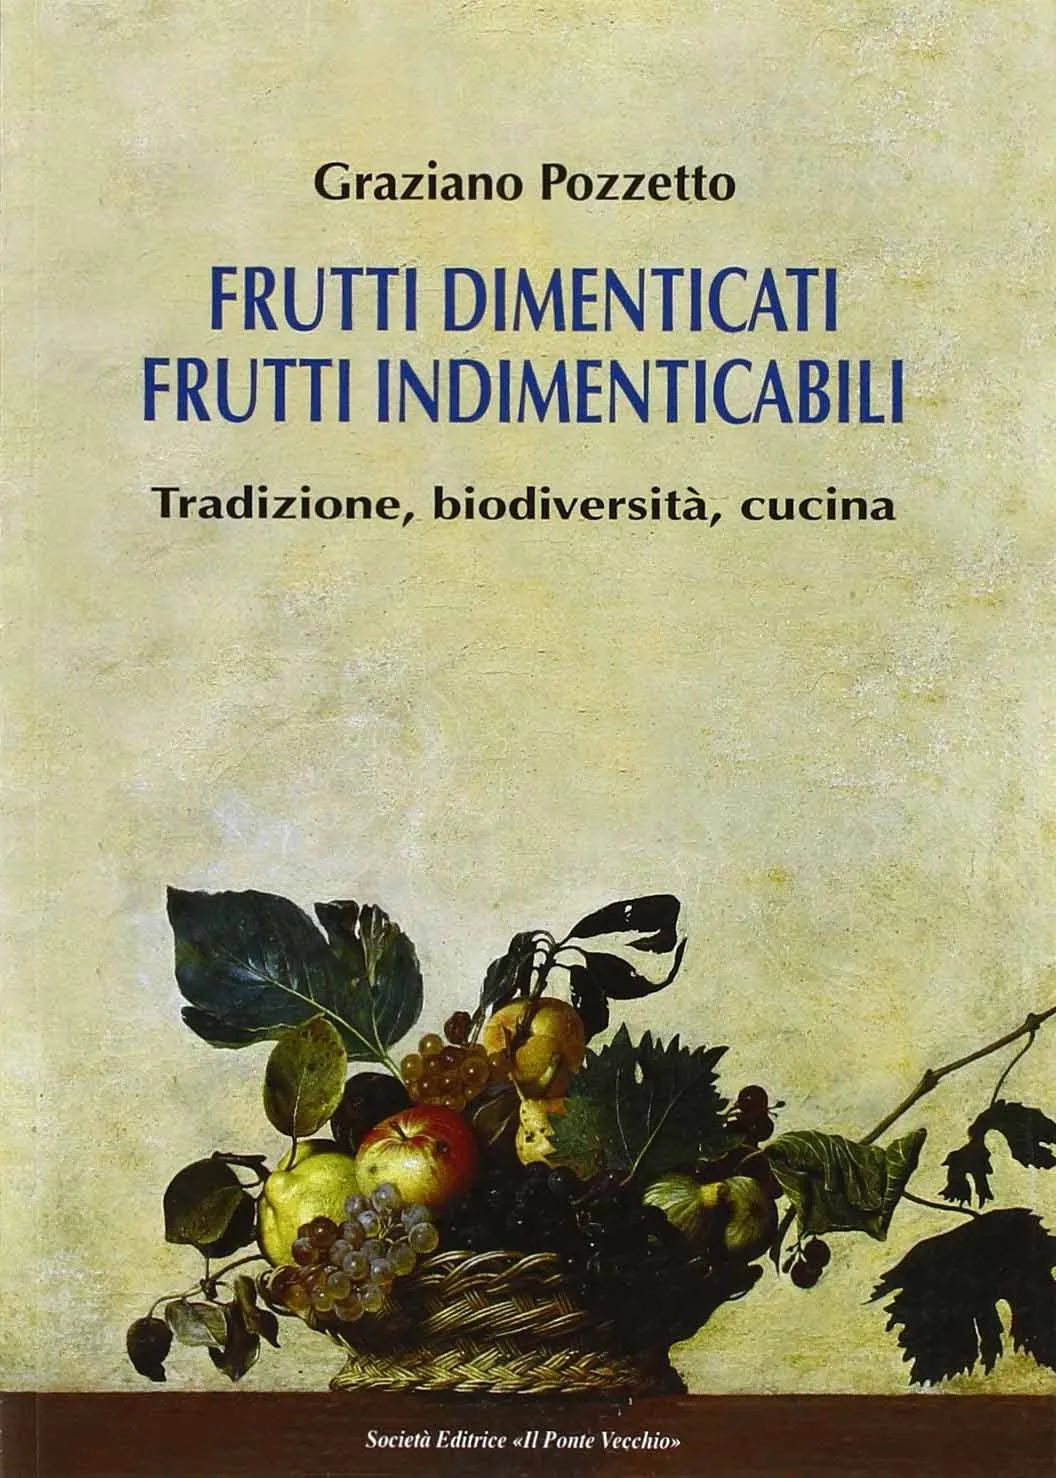 Graziano Pozzetto, <i>“Frutti dimenticati <br />frutti indimenticabili”</i>: <br />la videorecensione